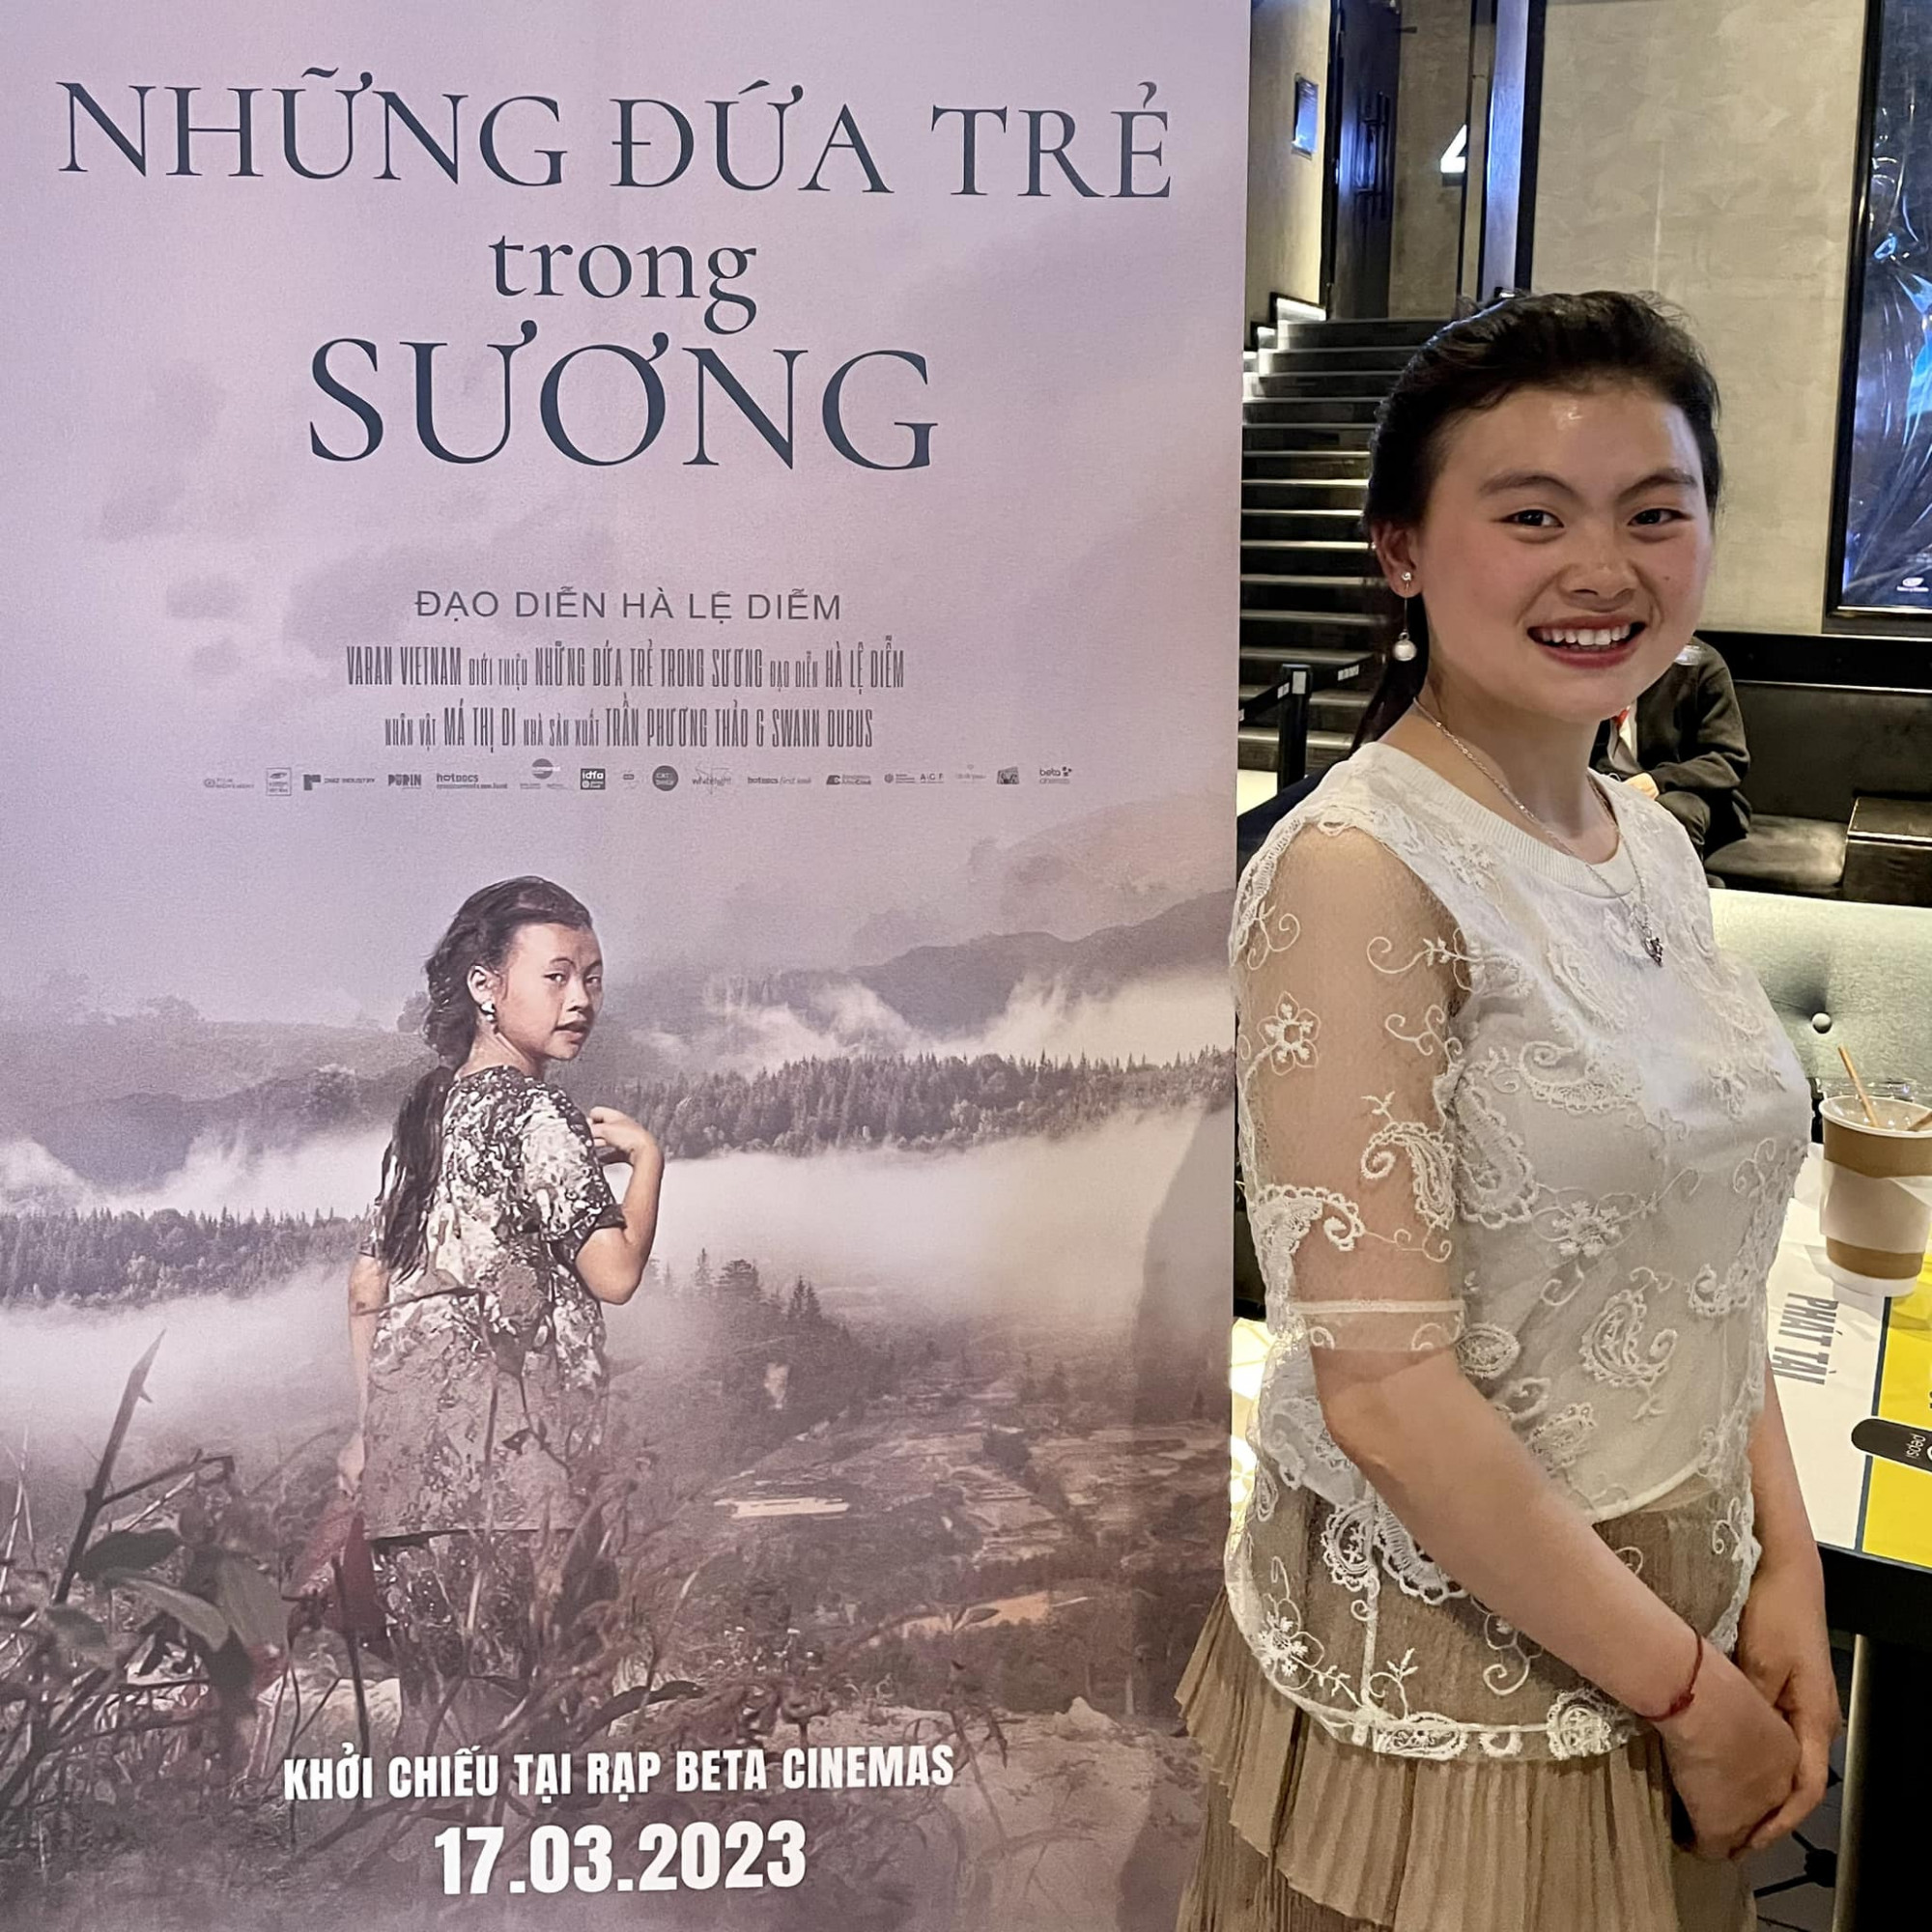 Di, nữ chính của phim tài liệu, sẽ có mặt tại Hà Nội để gặp gỡ khán giả 